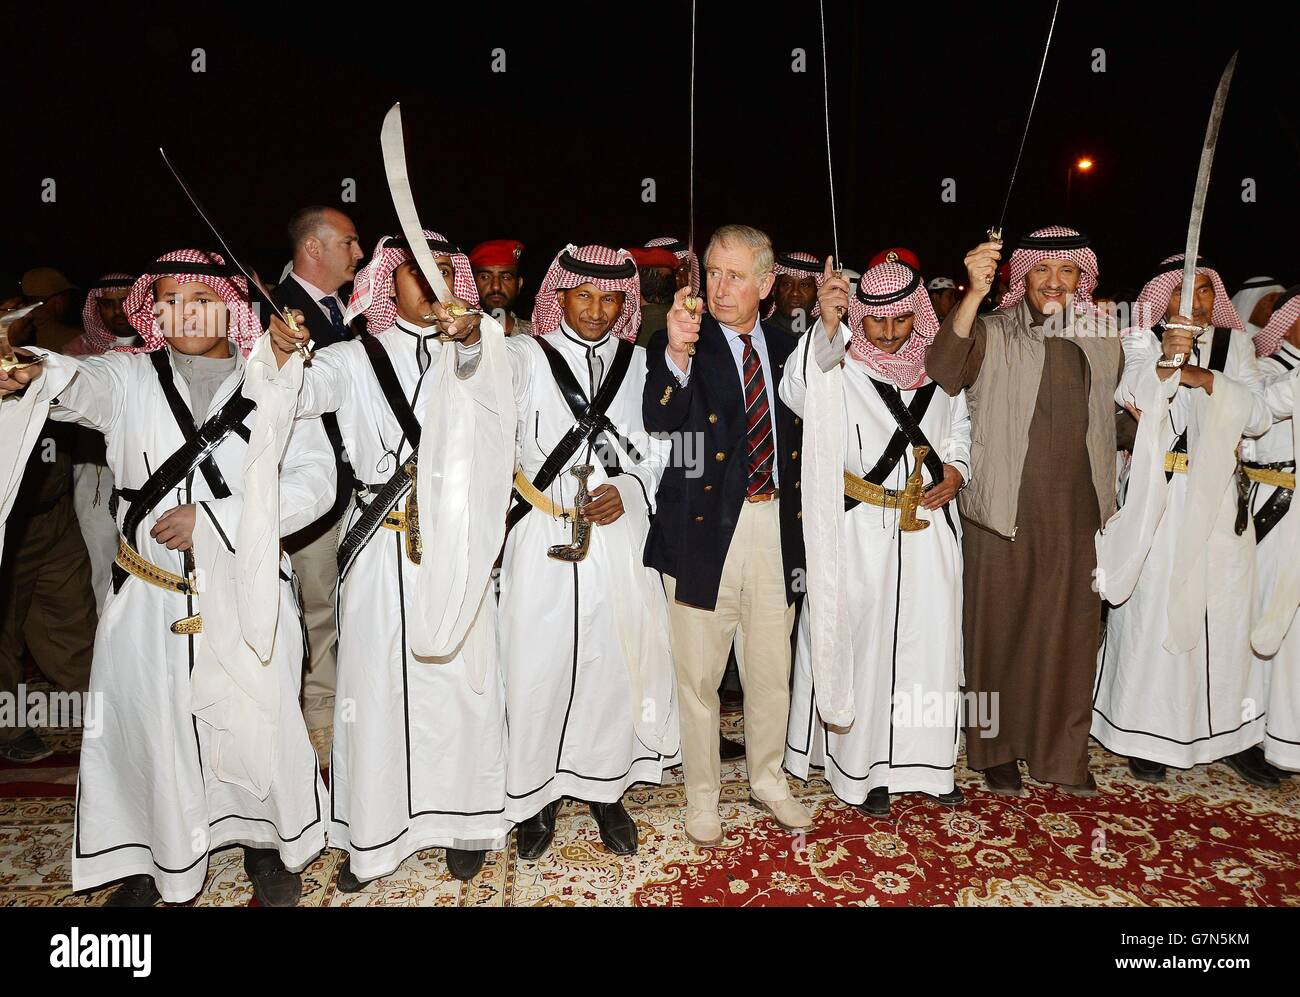 Il Principe del Galles si unisce ad una tradizionale danza delle spword nella città vecchia di al Ula, nel nord-ovest dell'Arabia Saudita, il quinto giorno del suo tour in Medio Oriente. Foto Stock